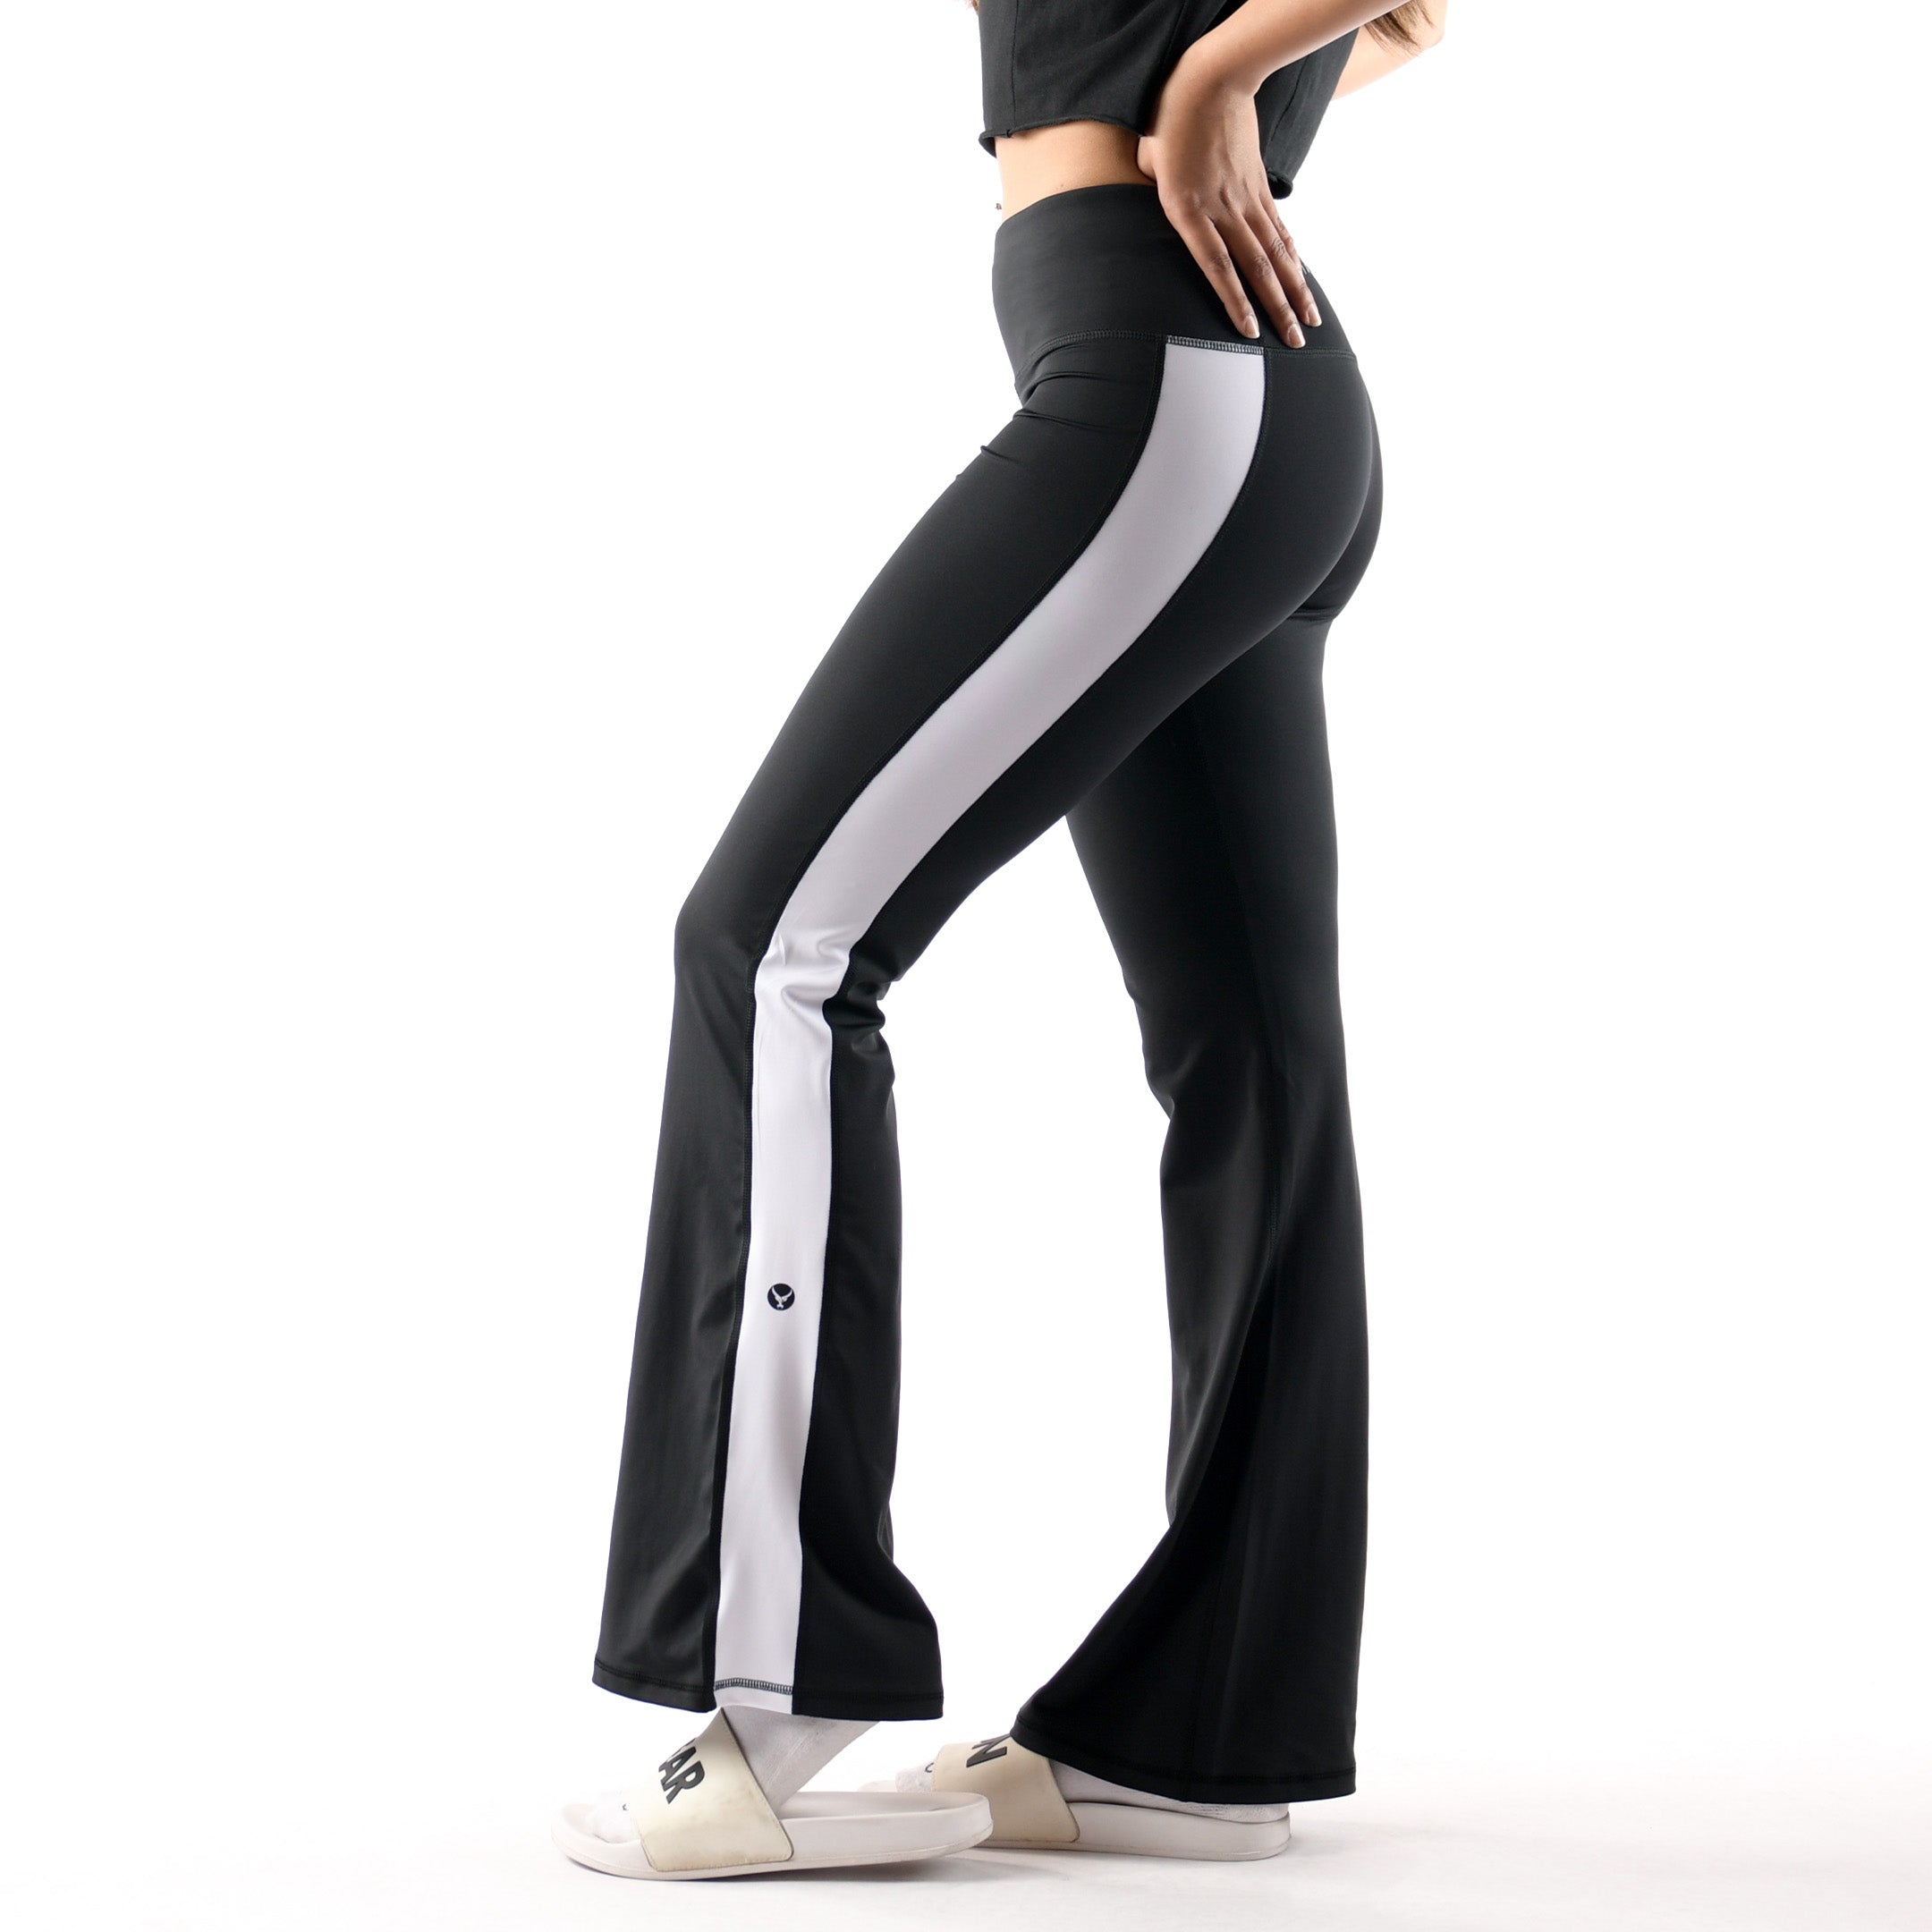 High-Rise Balance Yoga Pants - IRONGEAR Fitness - WOMEN BOTTOMS